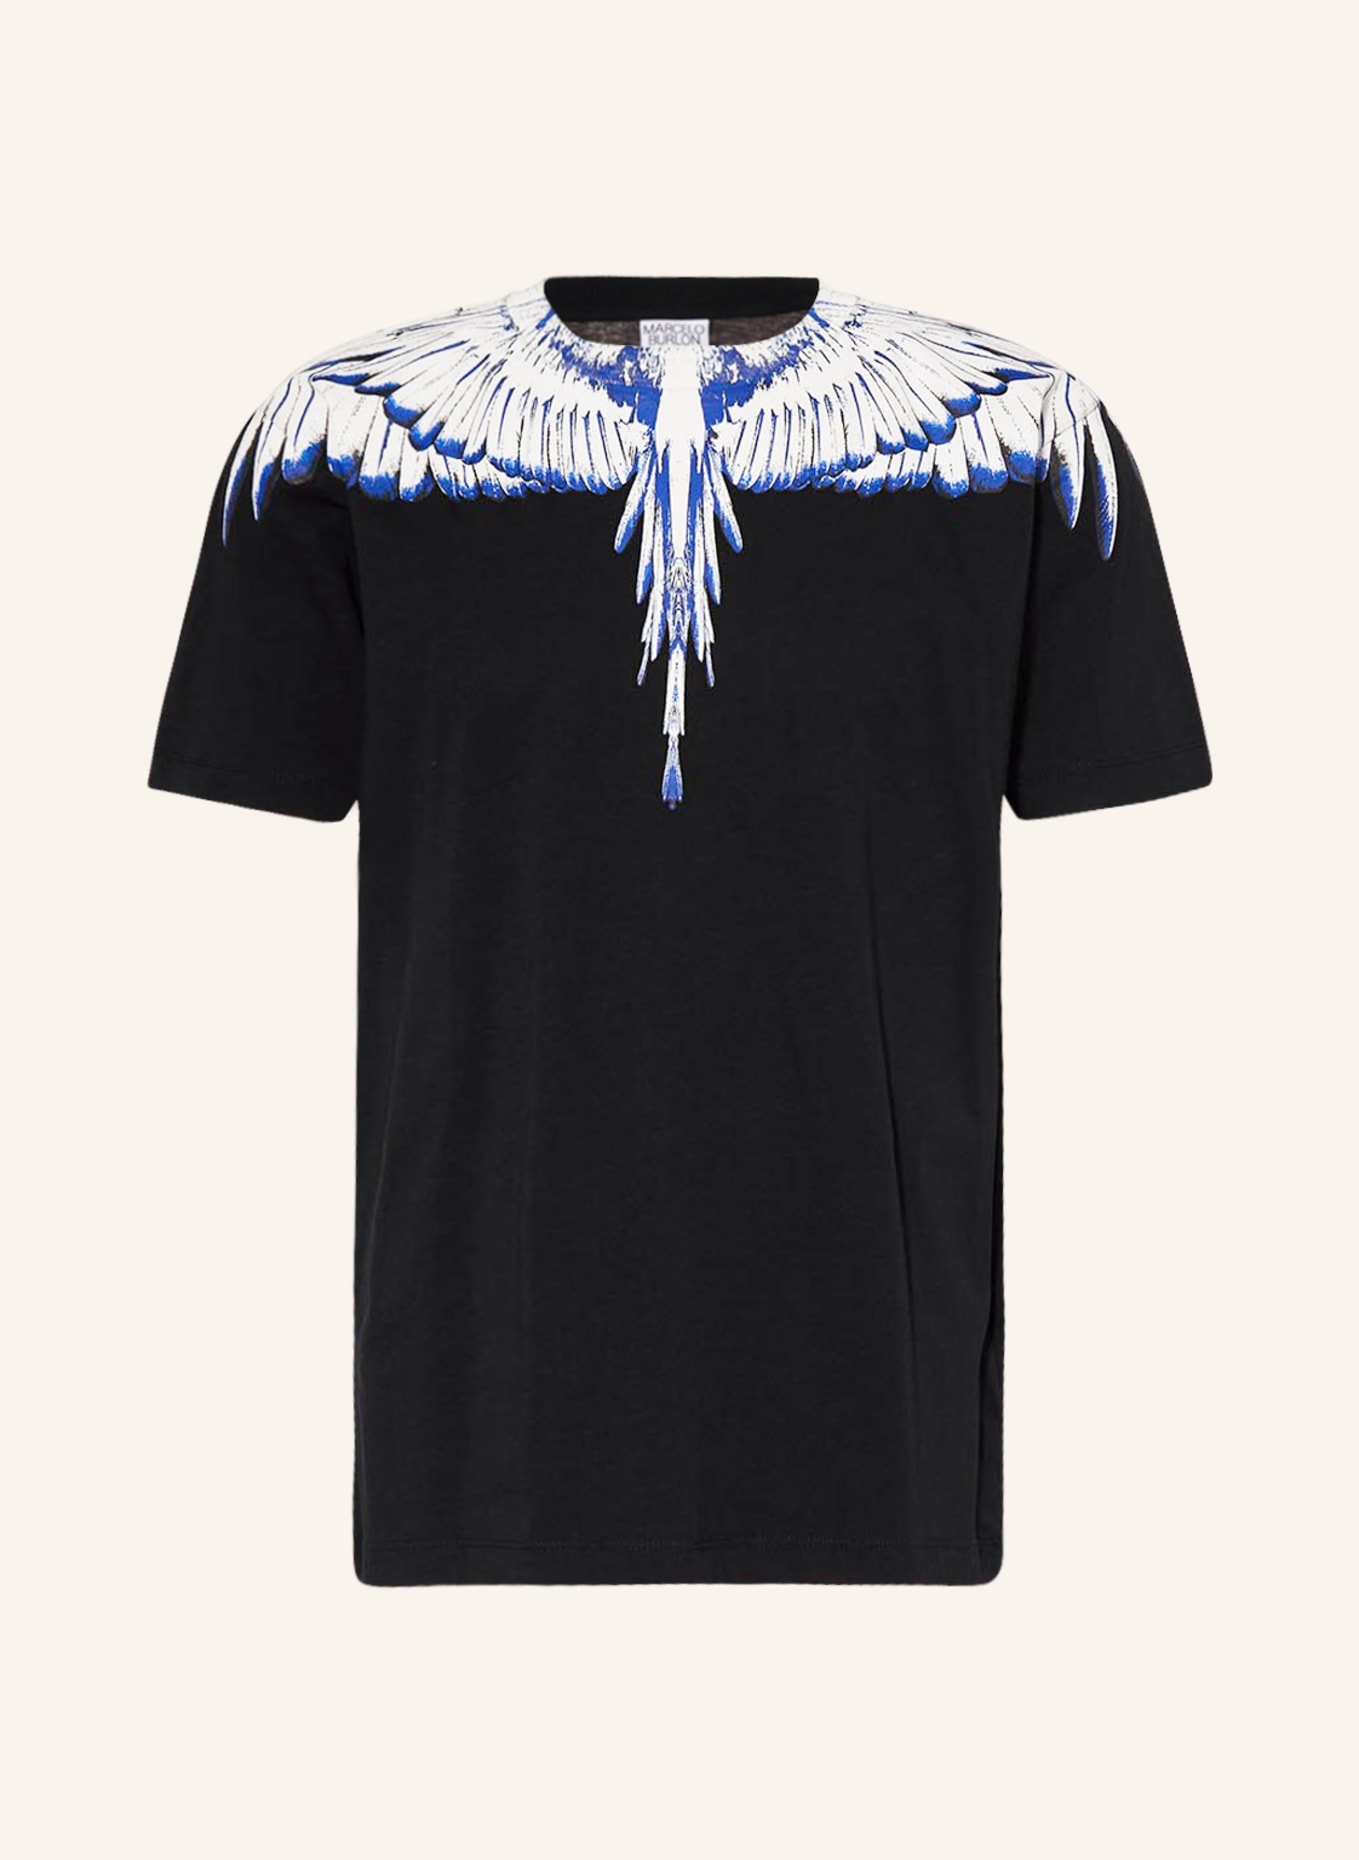 MARCELO BURLON T-shirt ICON WINGS, Color: BLACK/ WHITE/ BLUE (Image 1)